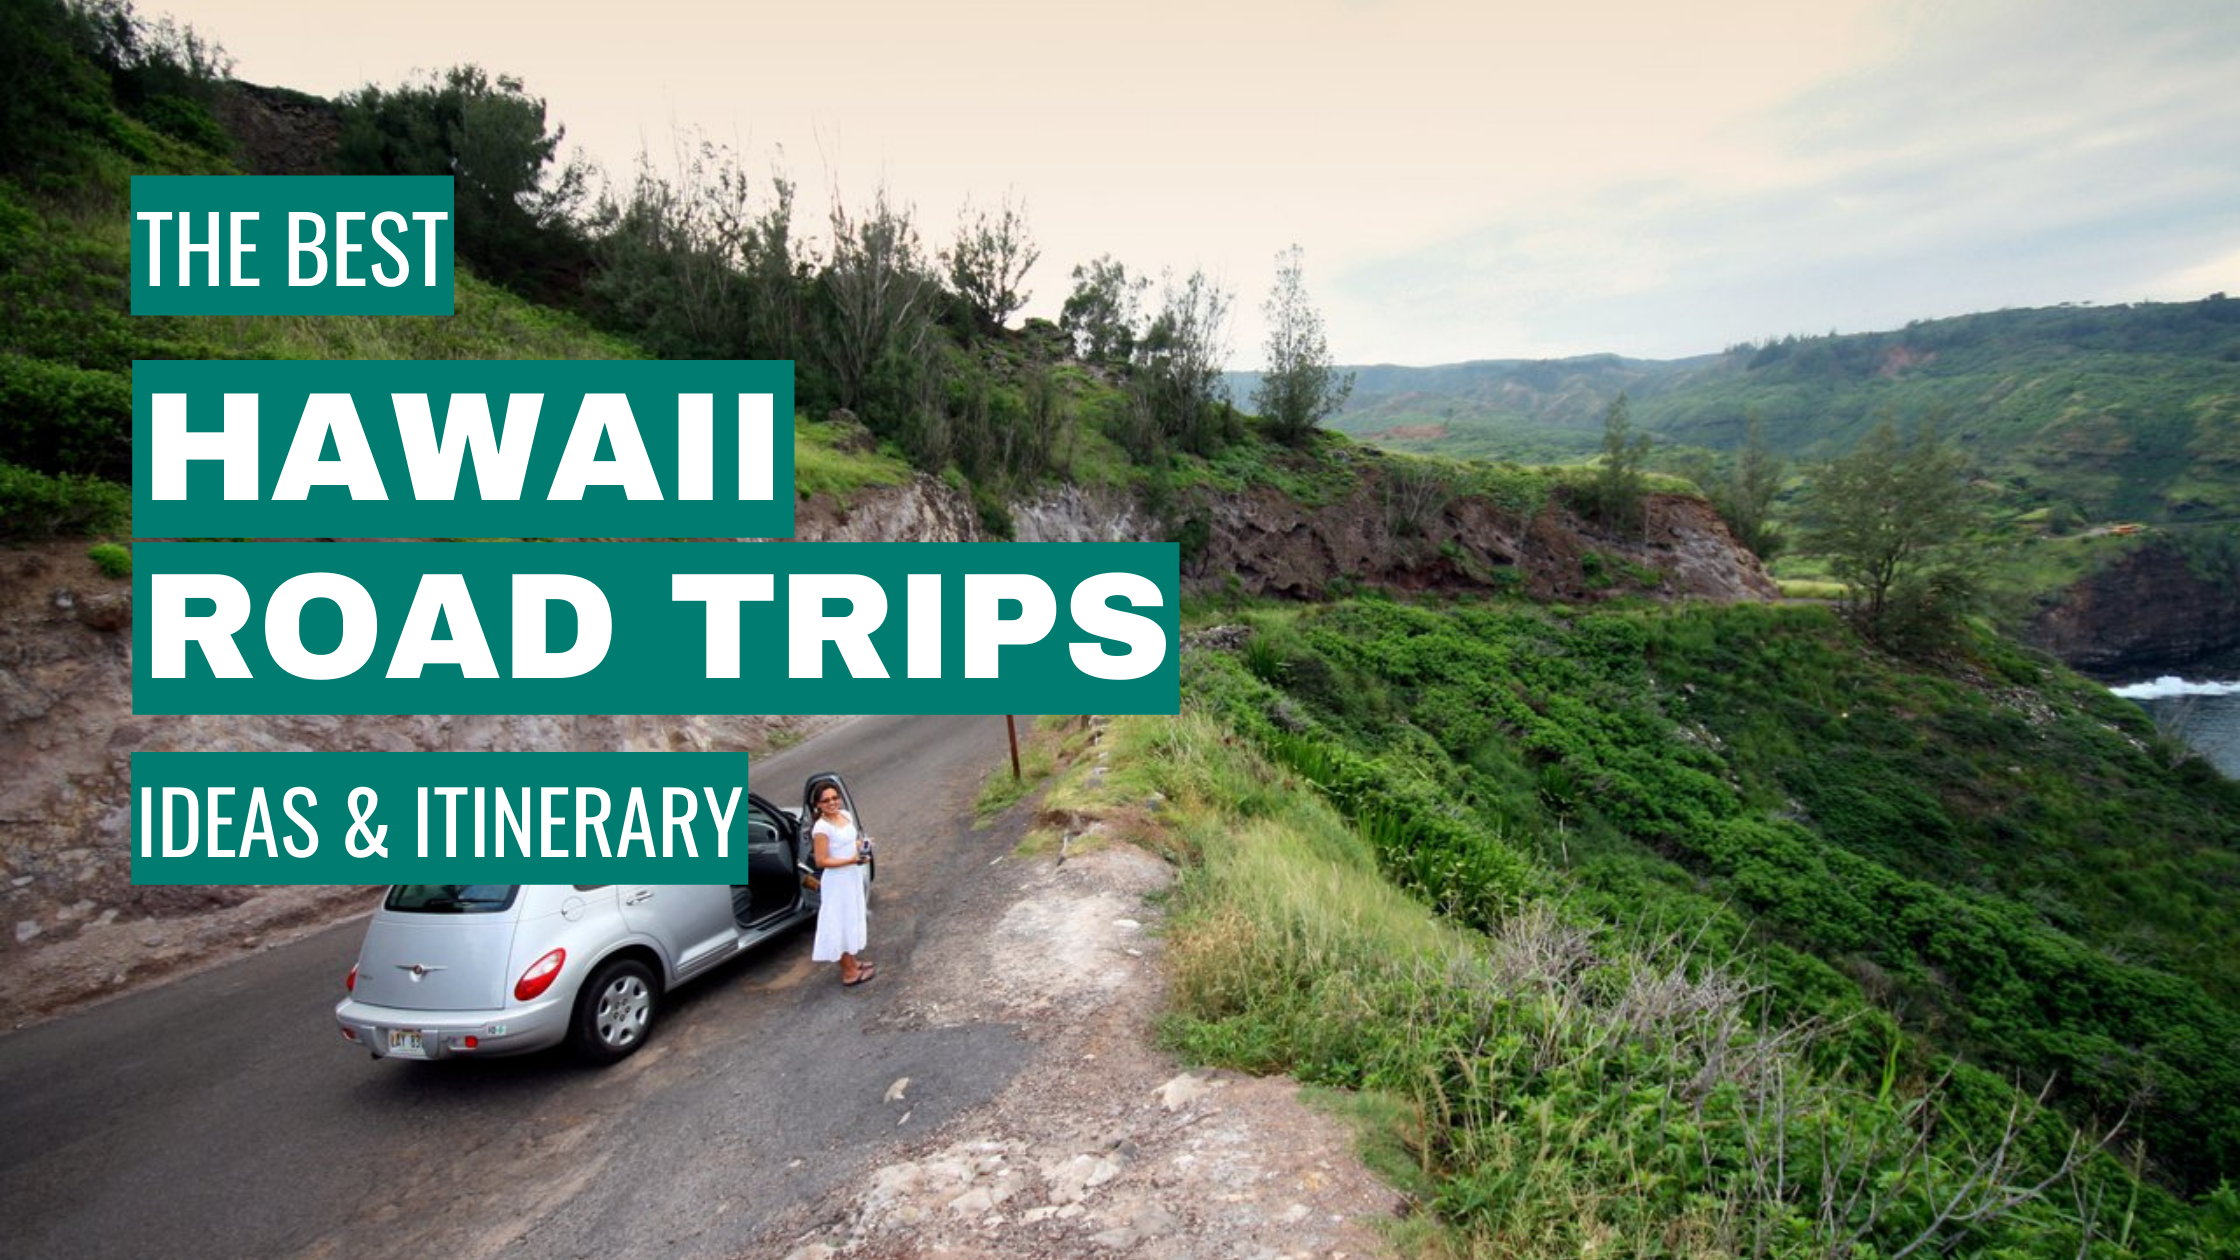 Hawaii Road Trip Ideas: 11 Best Road Trips + Itinerary